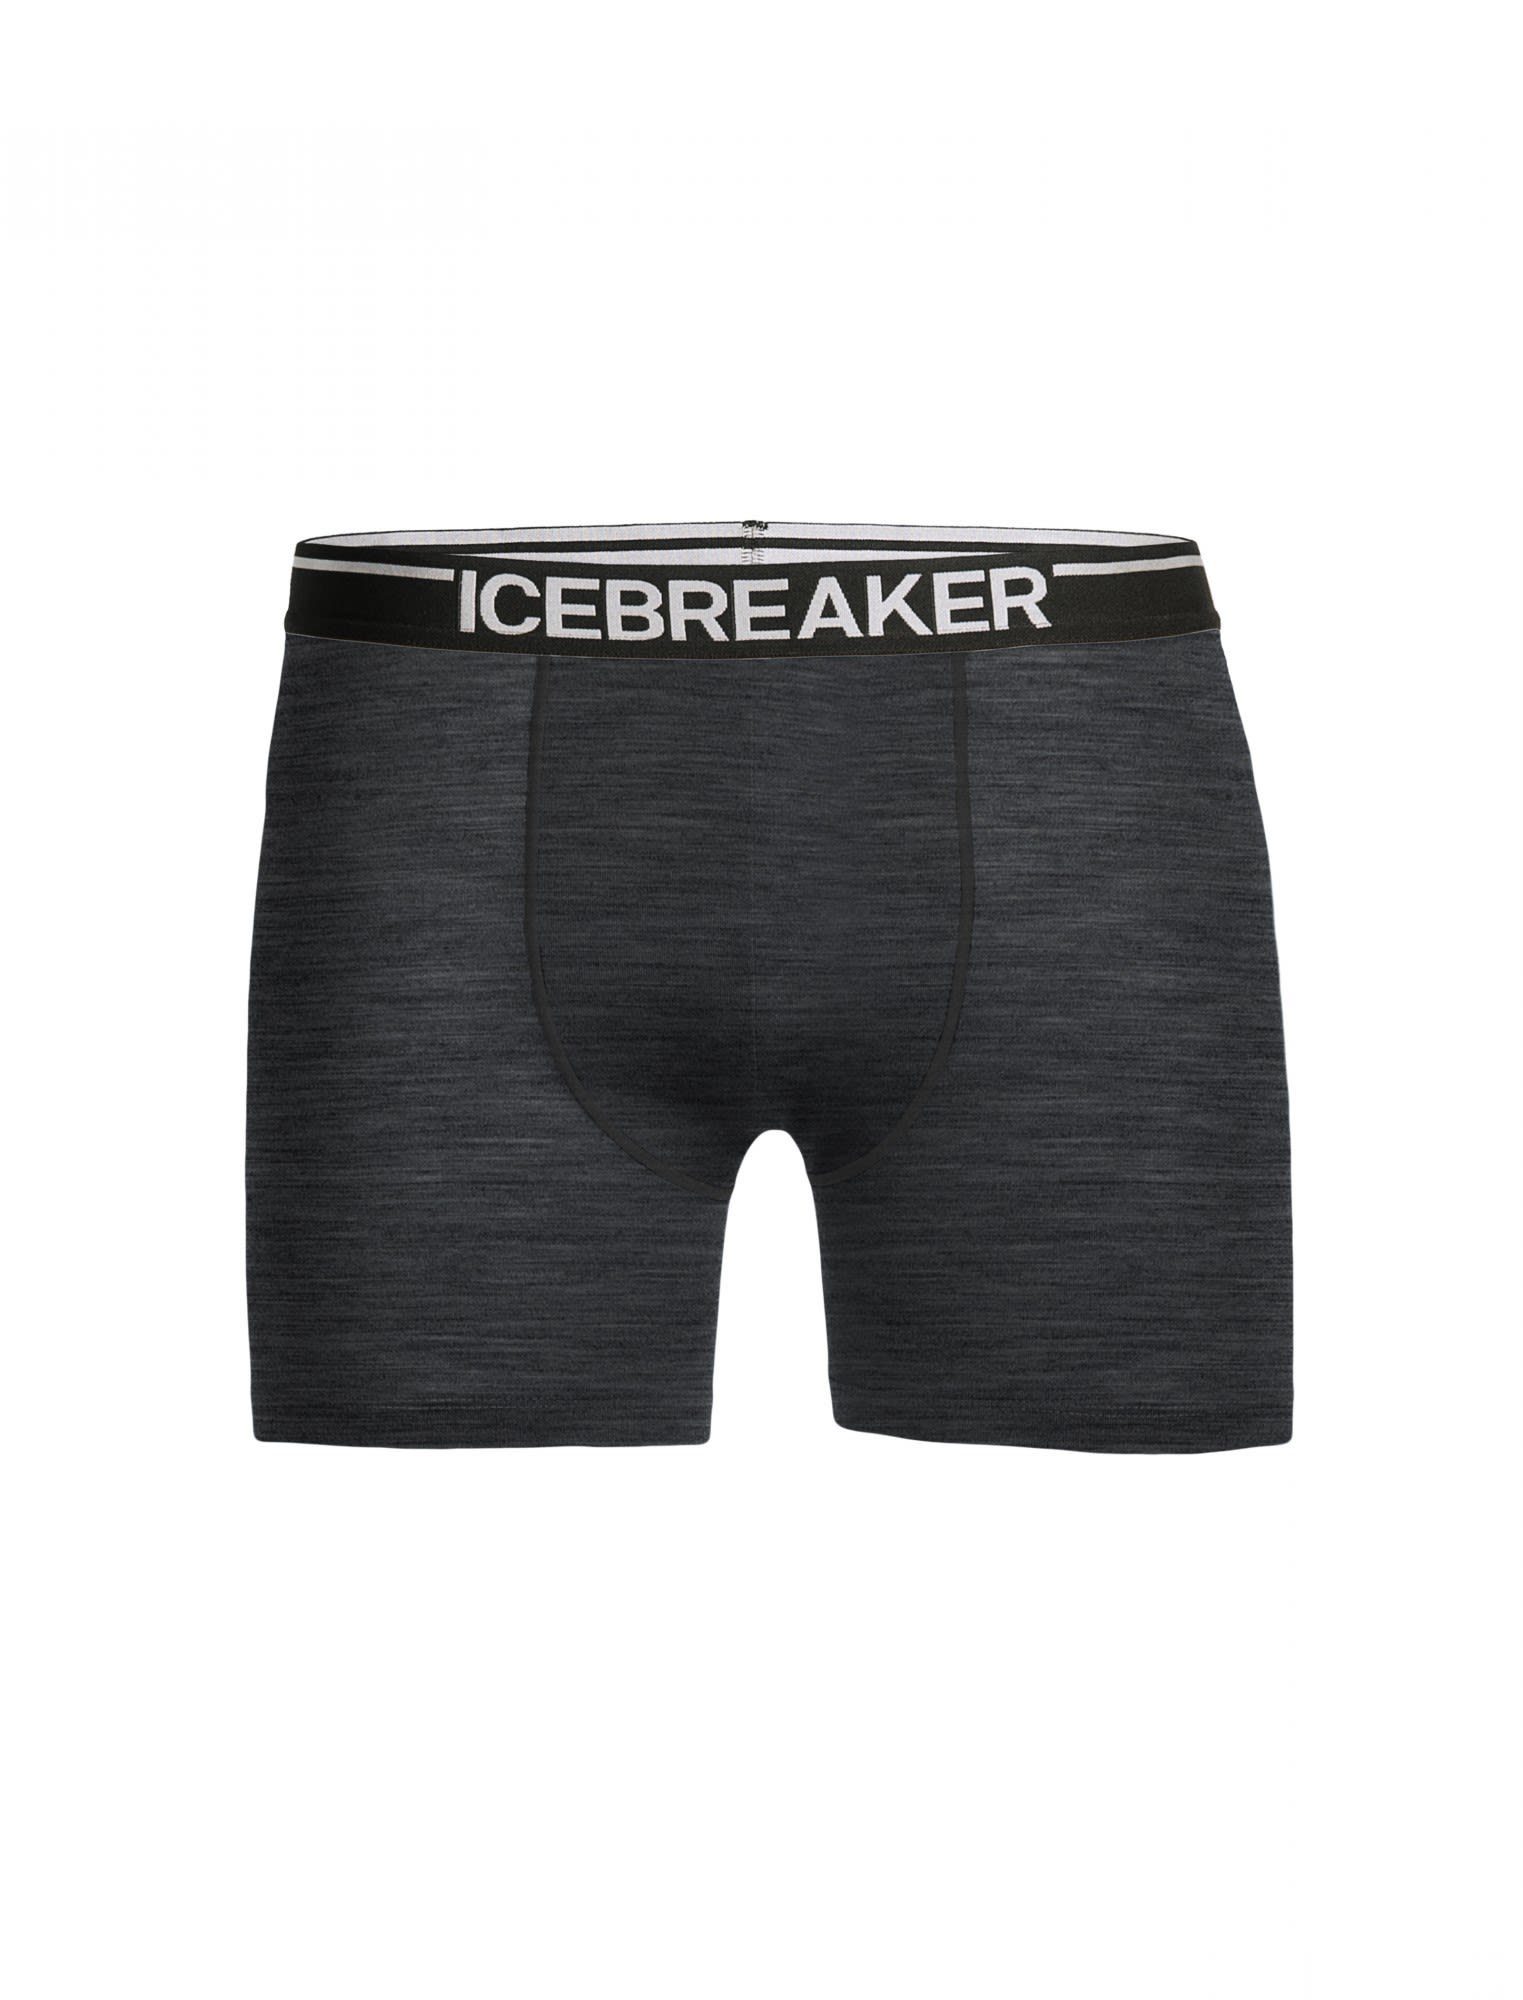 HTHR Unterhose Grey Kurze Icebreaker Herren Lange Anatomica Boxers Icebreaker M